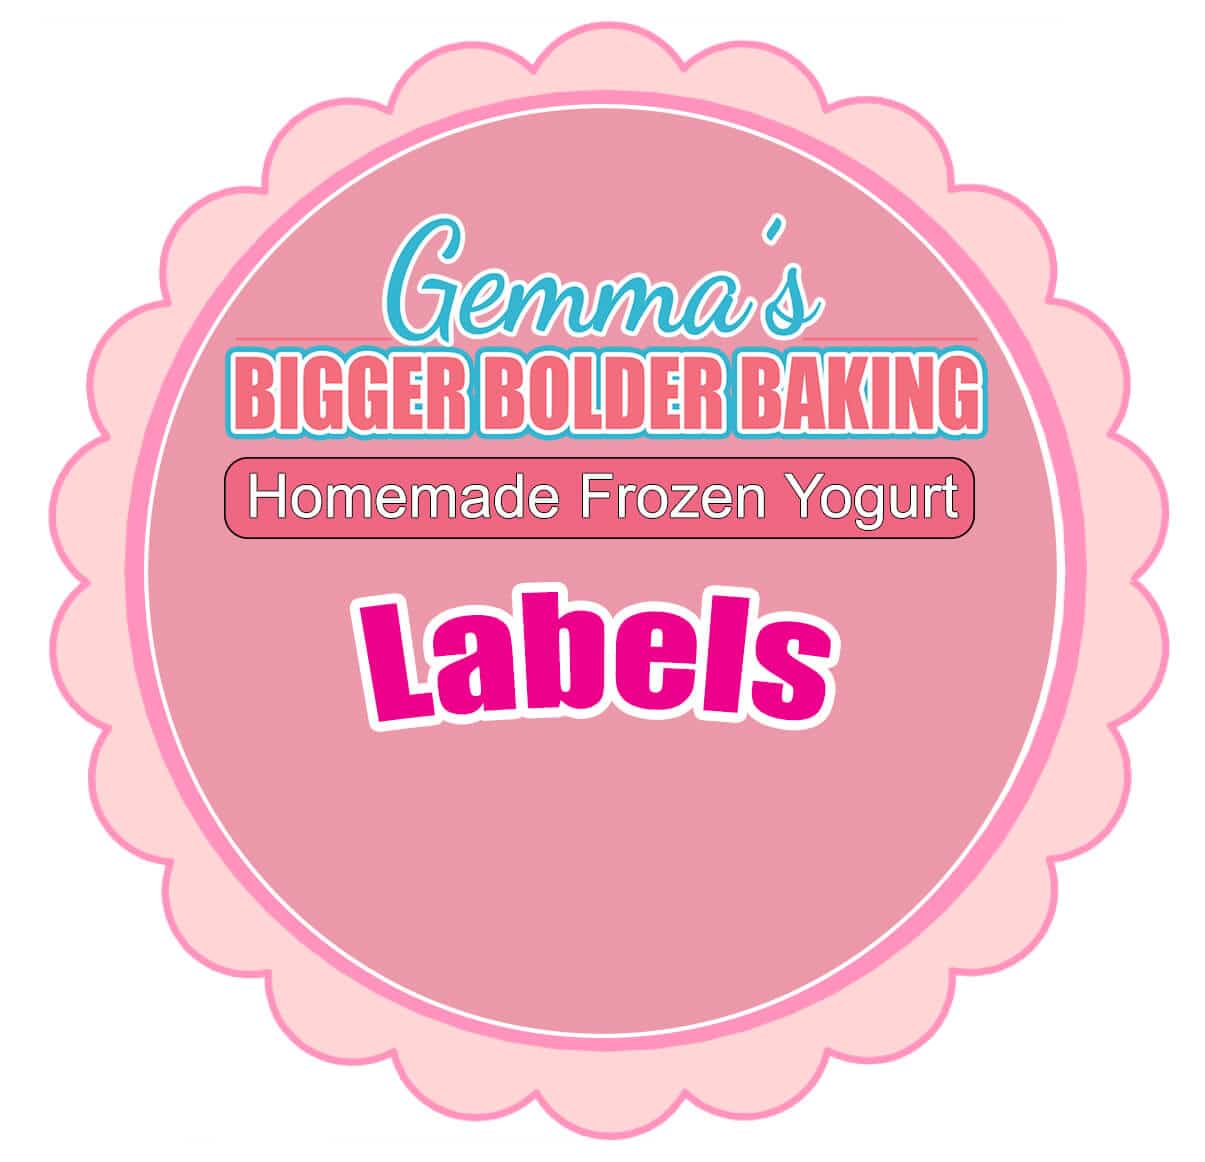 homemade-frozen-yogurt-labels-template-gemma-s-bigger-bolder-baking